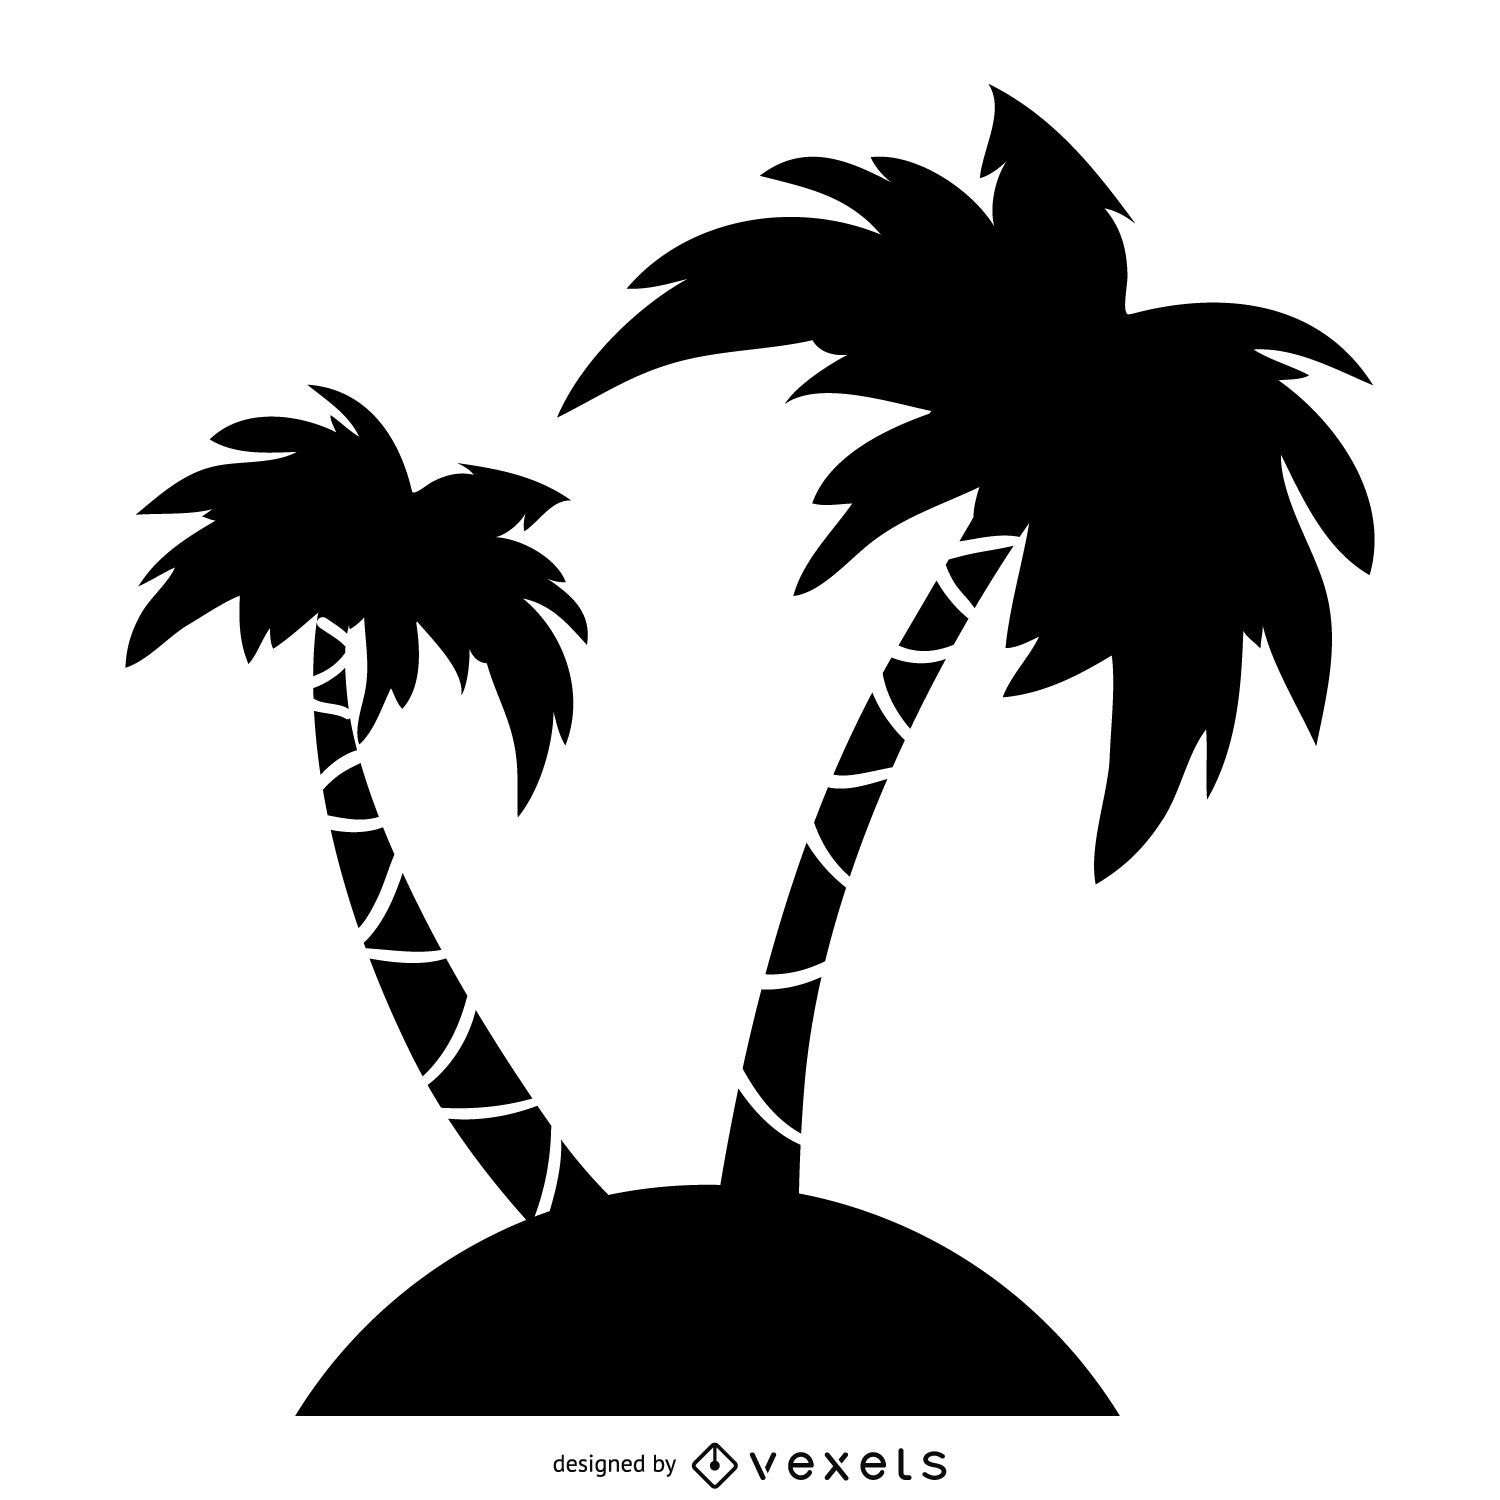 Ilustraci?n de silueta de palmeras